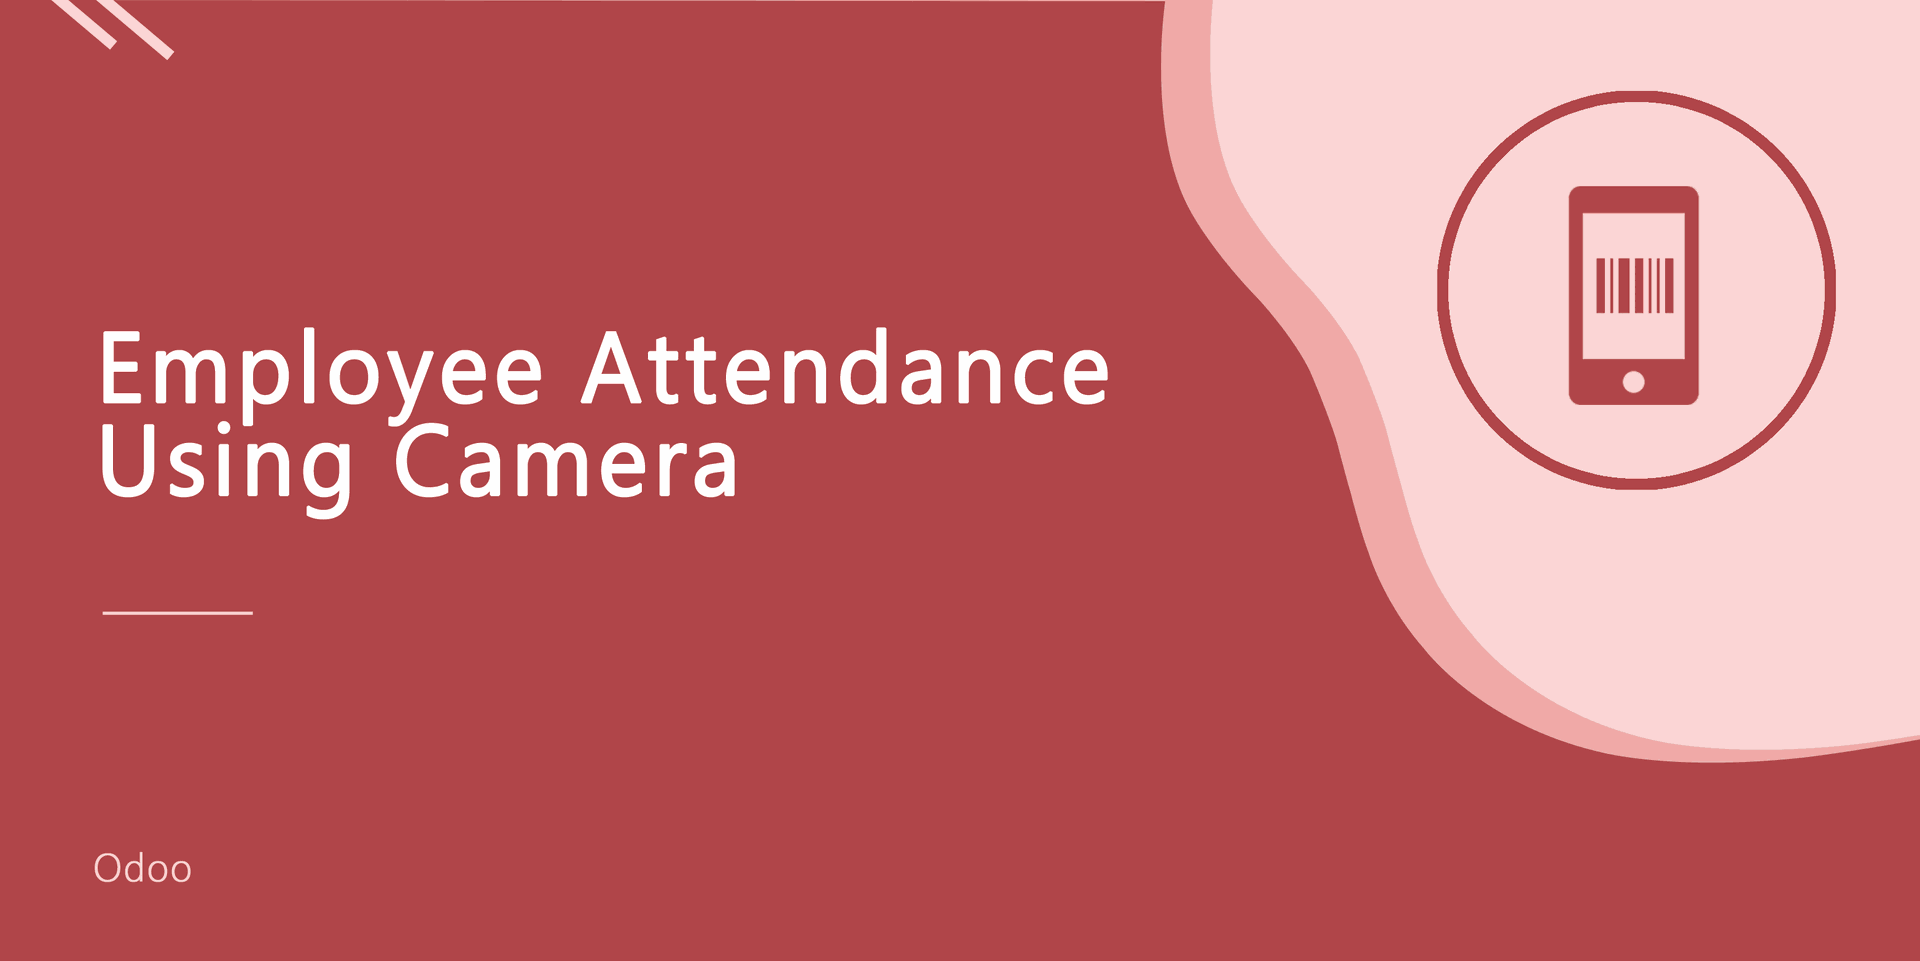 Employee Attendance Using Camera
